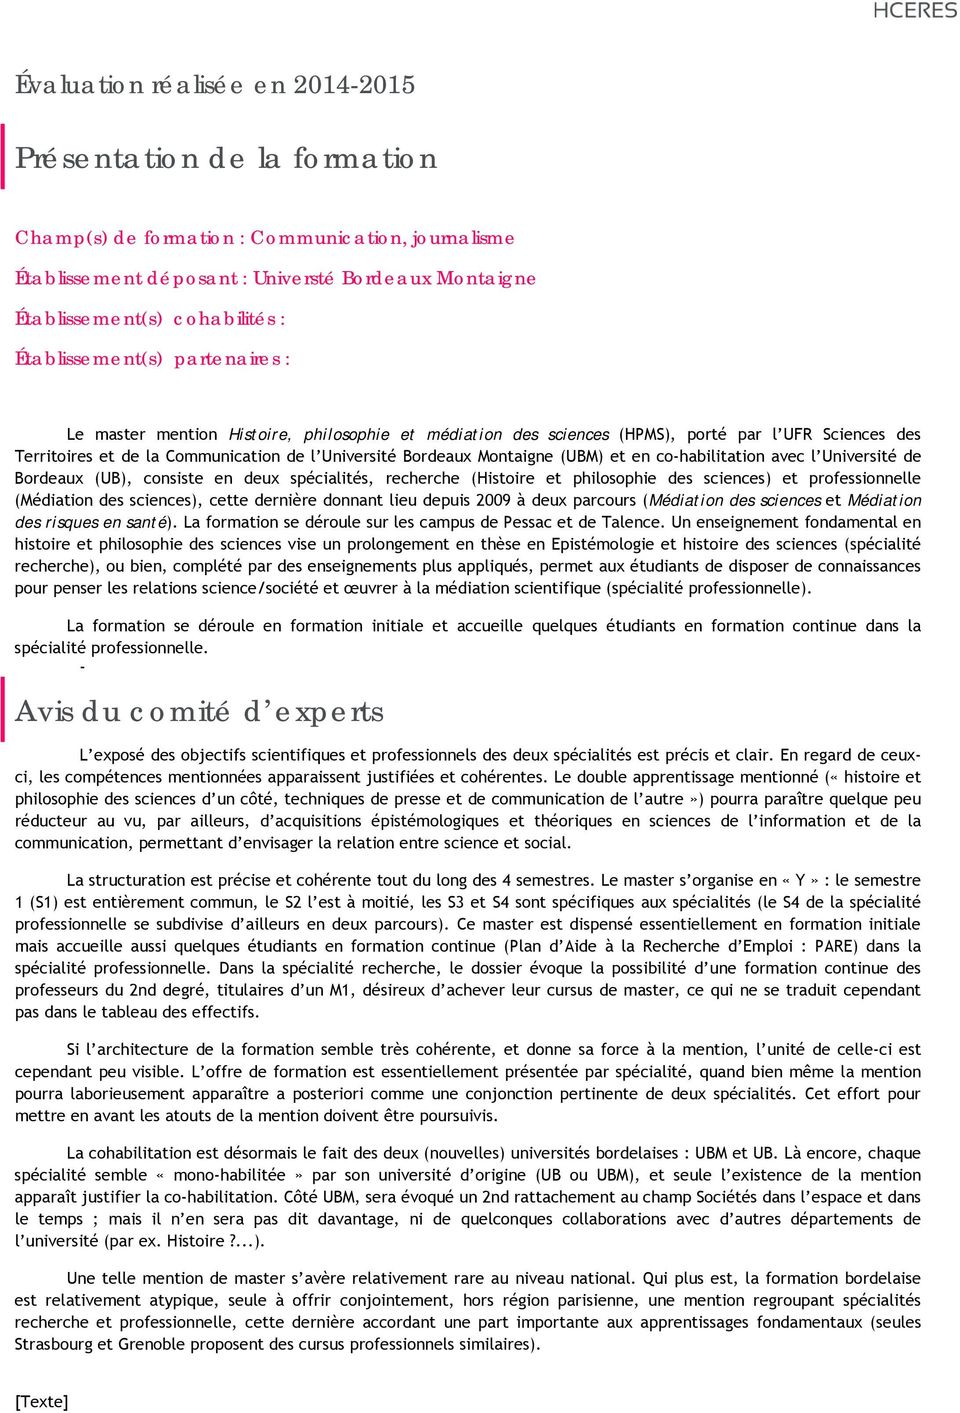 Montaigne (UBM) et en co-habilitation avec l Université de Bordeaux (UB), consiste en deux spécialités, recherche (Histoire et philosophie des sciences) et professionnelle (Médiation des sciences),